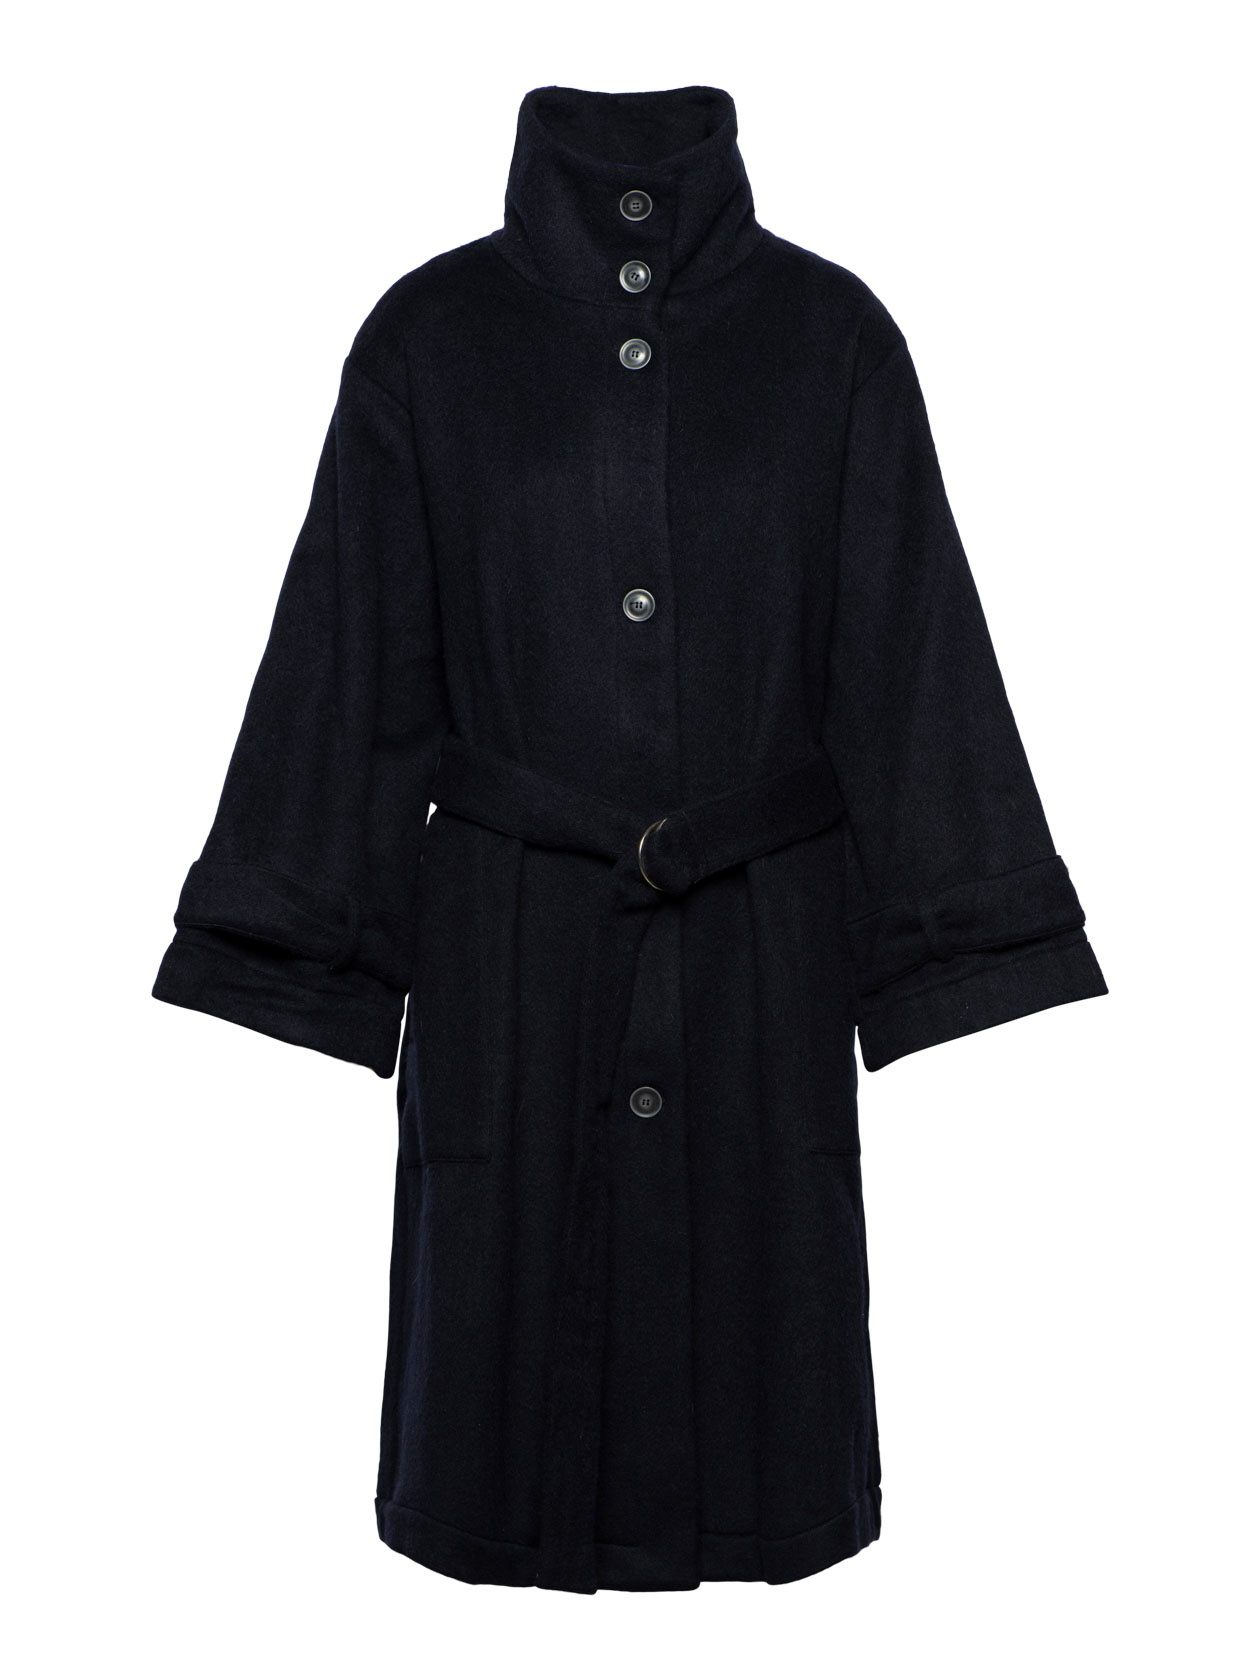 Le six coat - navy cashmere - Dutchess - Shop